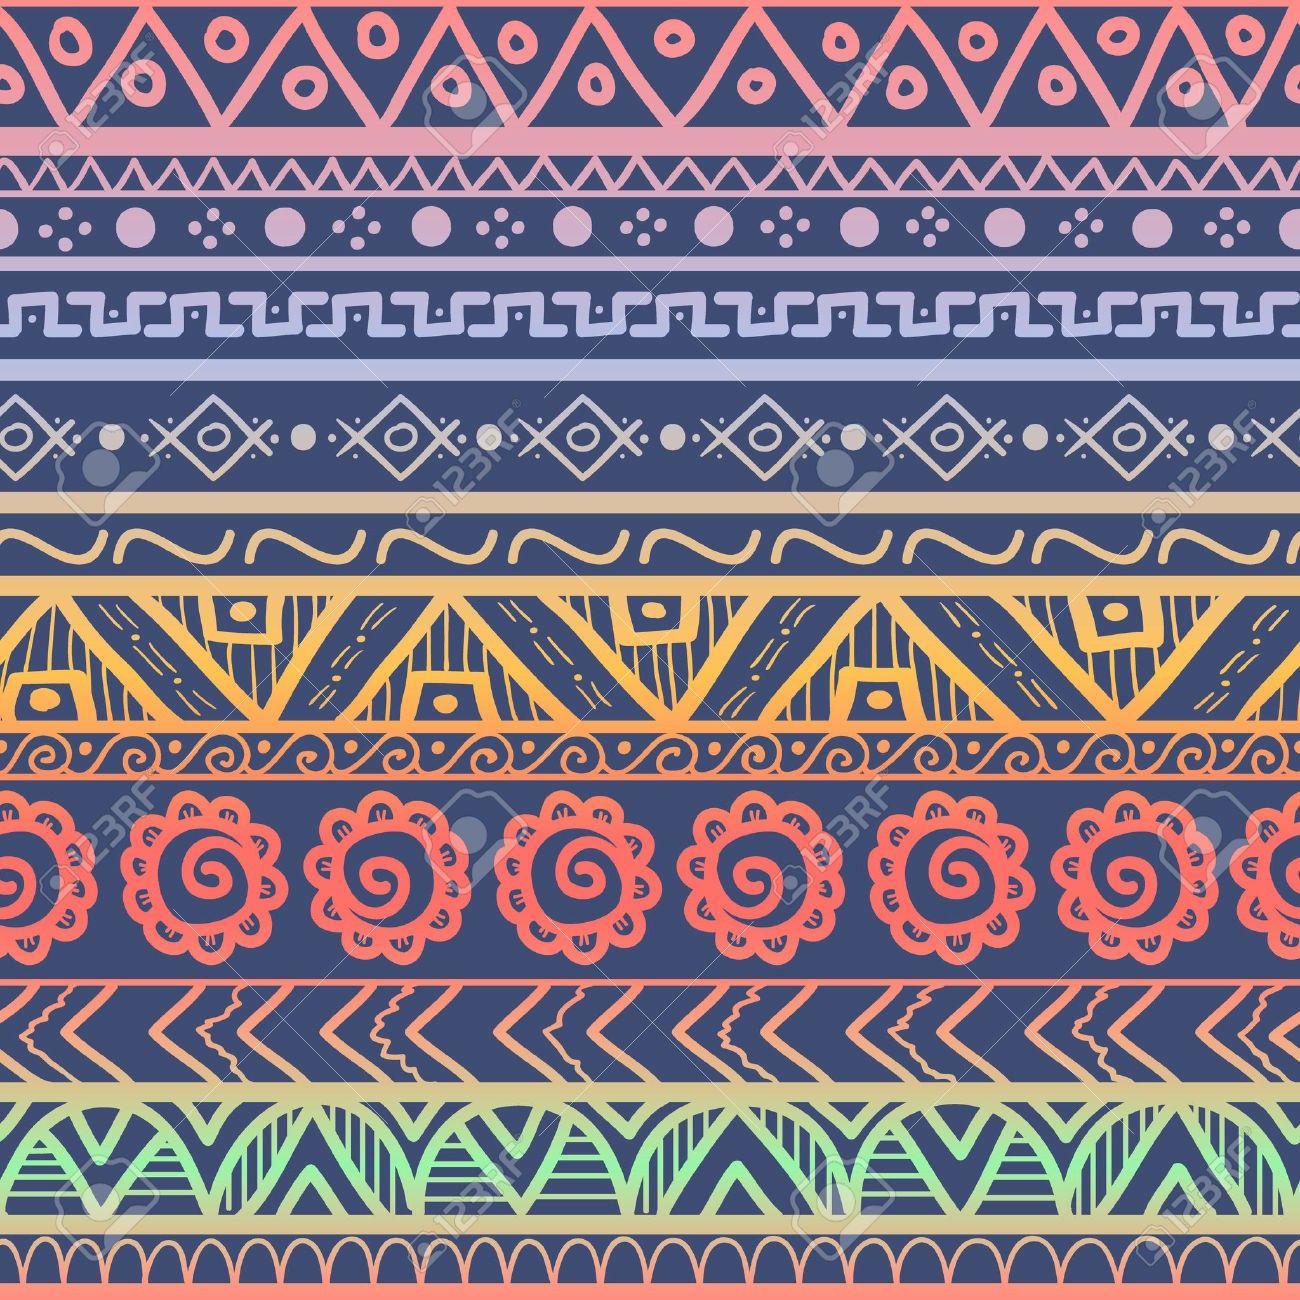 Aztec Print Wallpapers - Top Free Aztec